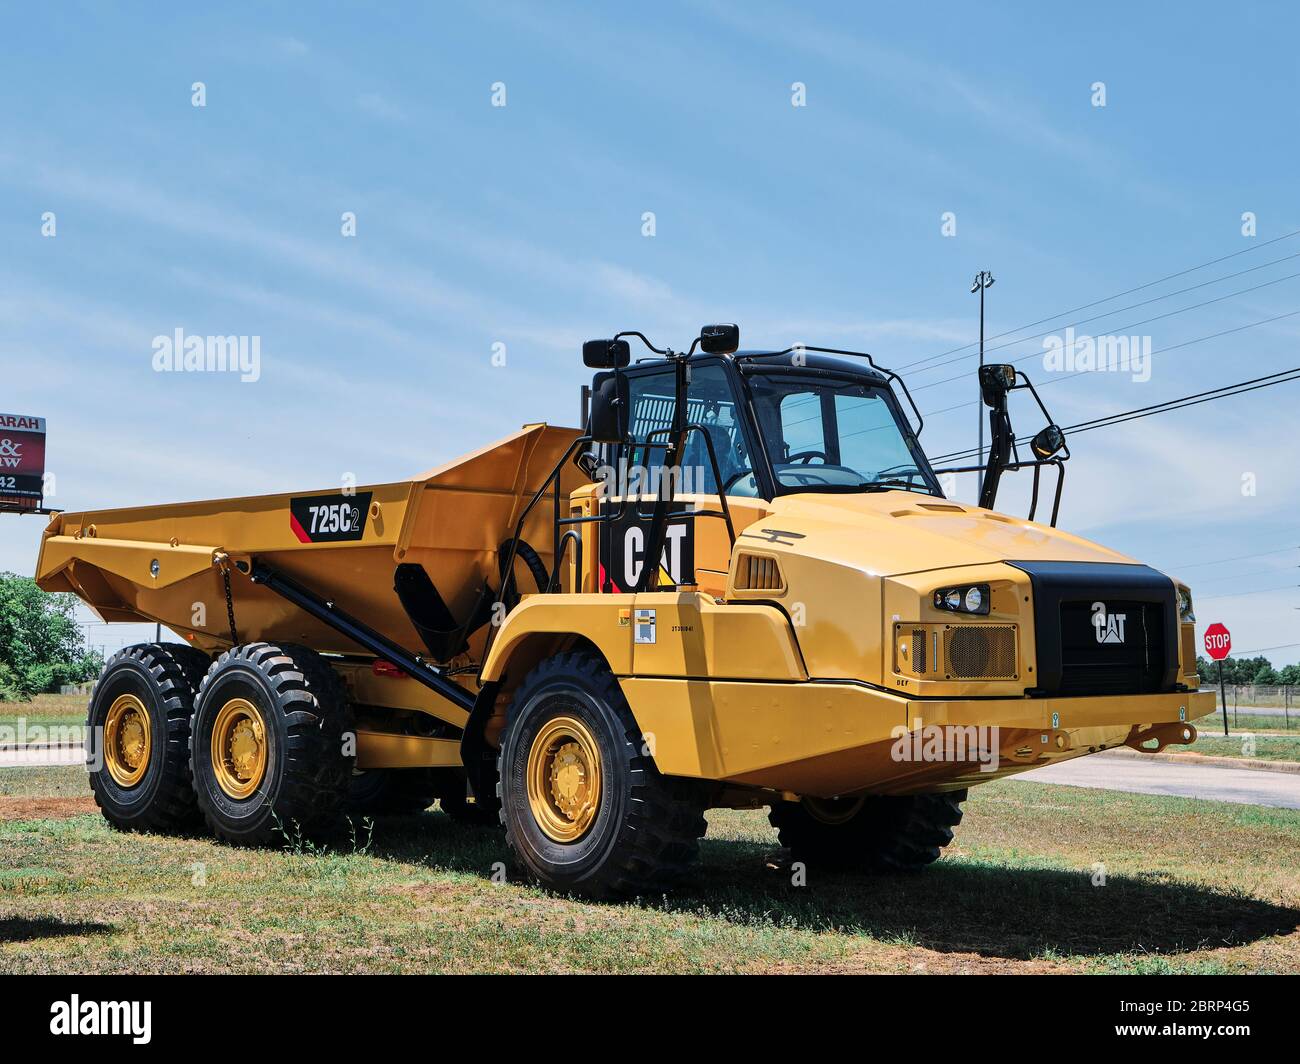 Nouveau moteur de terrassement articulé CAT 725C2 exposé devant un terrain de vente d'équipements lourds Caterpillar à Montgomery, Alabama, États-Unis. Banque D'Images